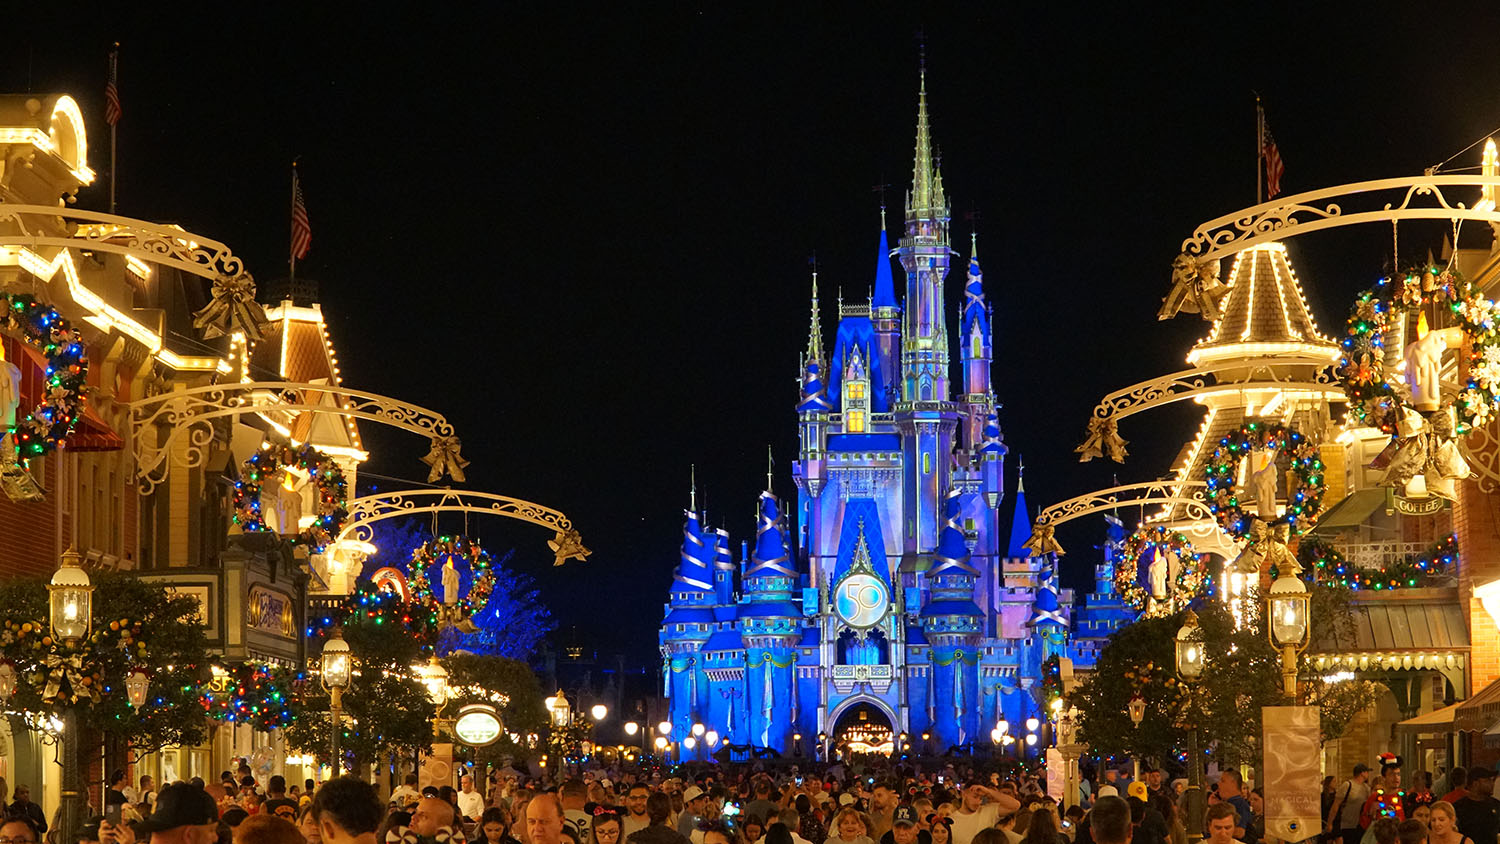 Noite mágica com os personagens da Disney - Coisas de Orlando